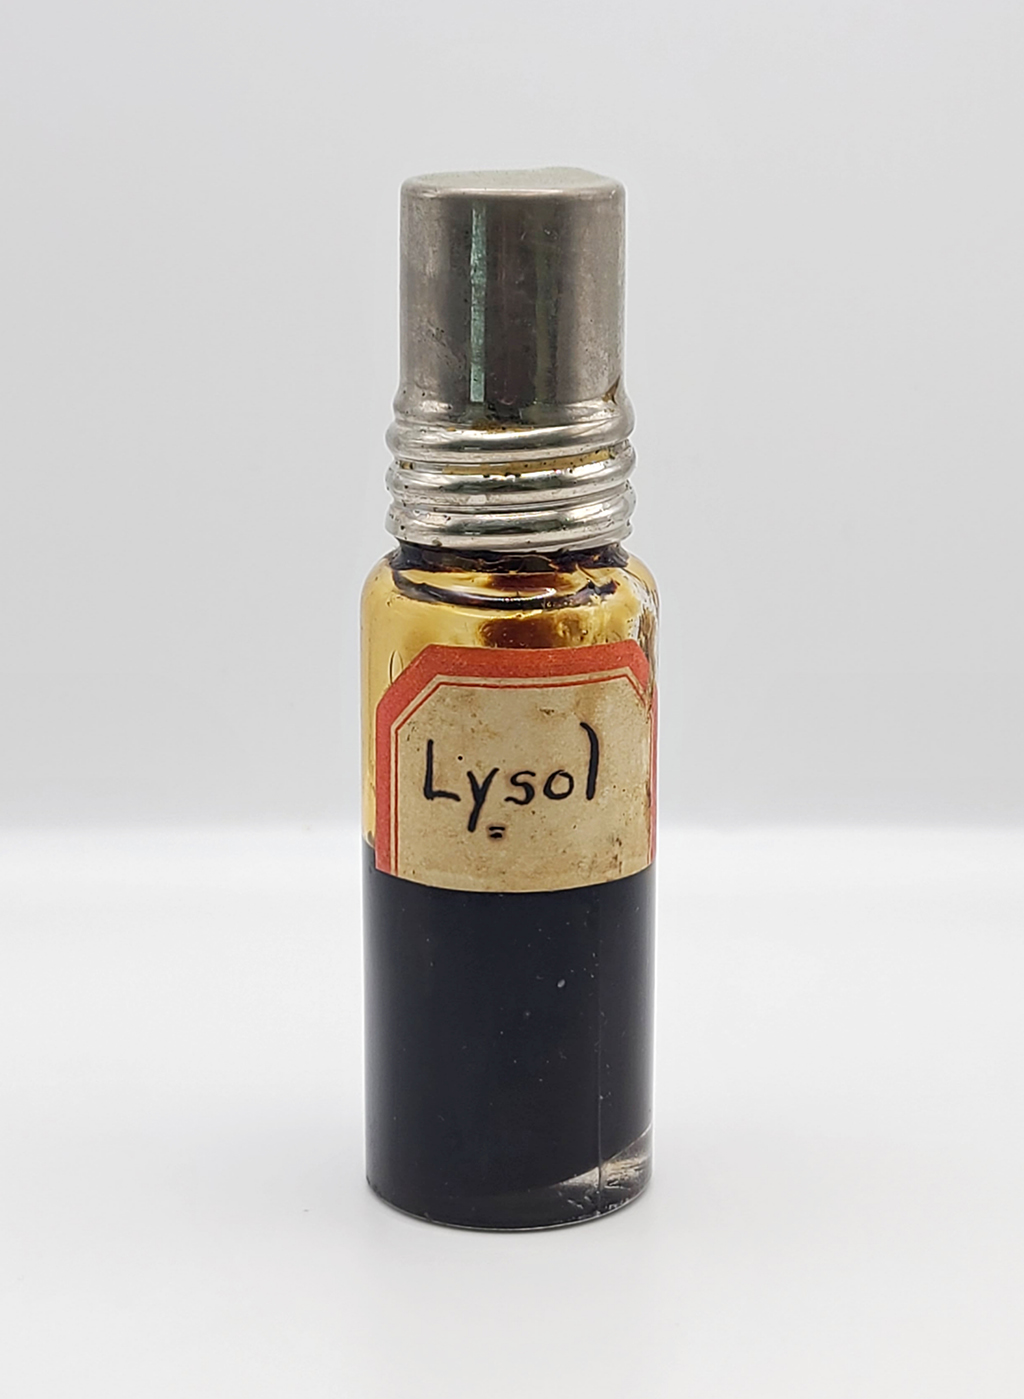 Dark bottle contains handwritten label for "Lysol"